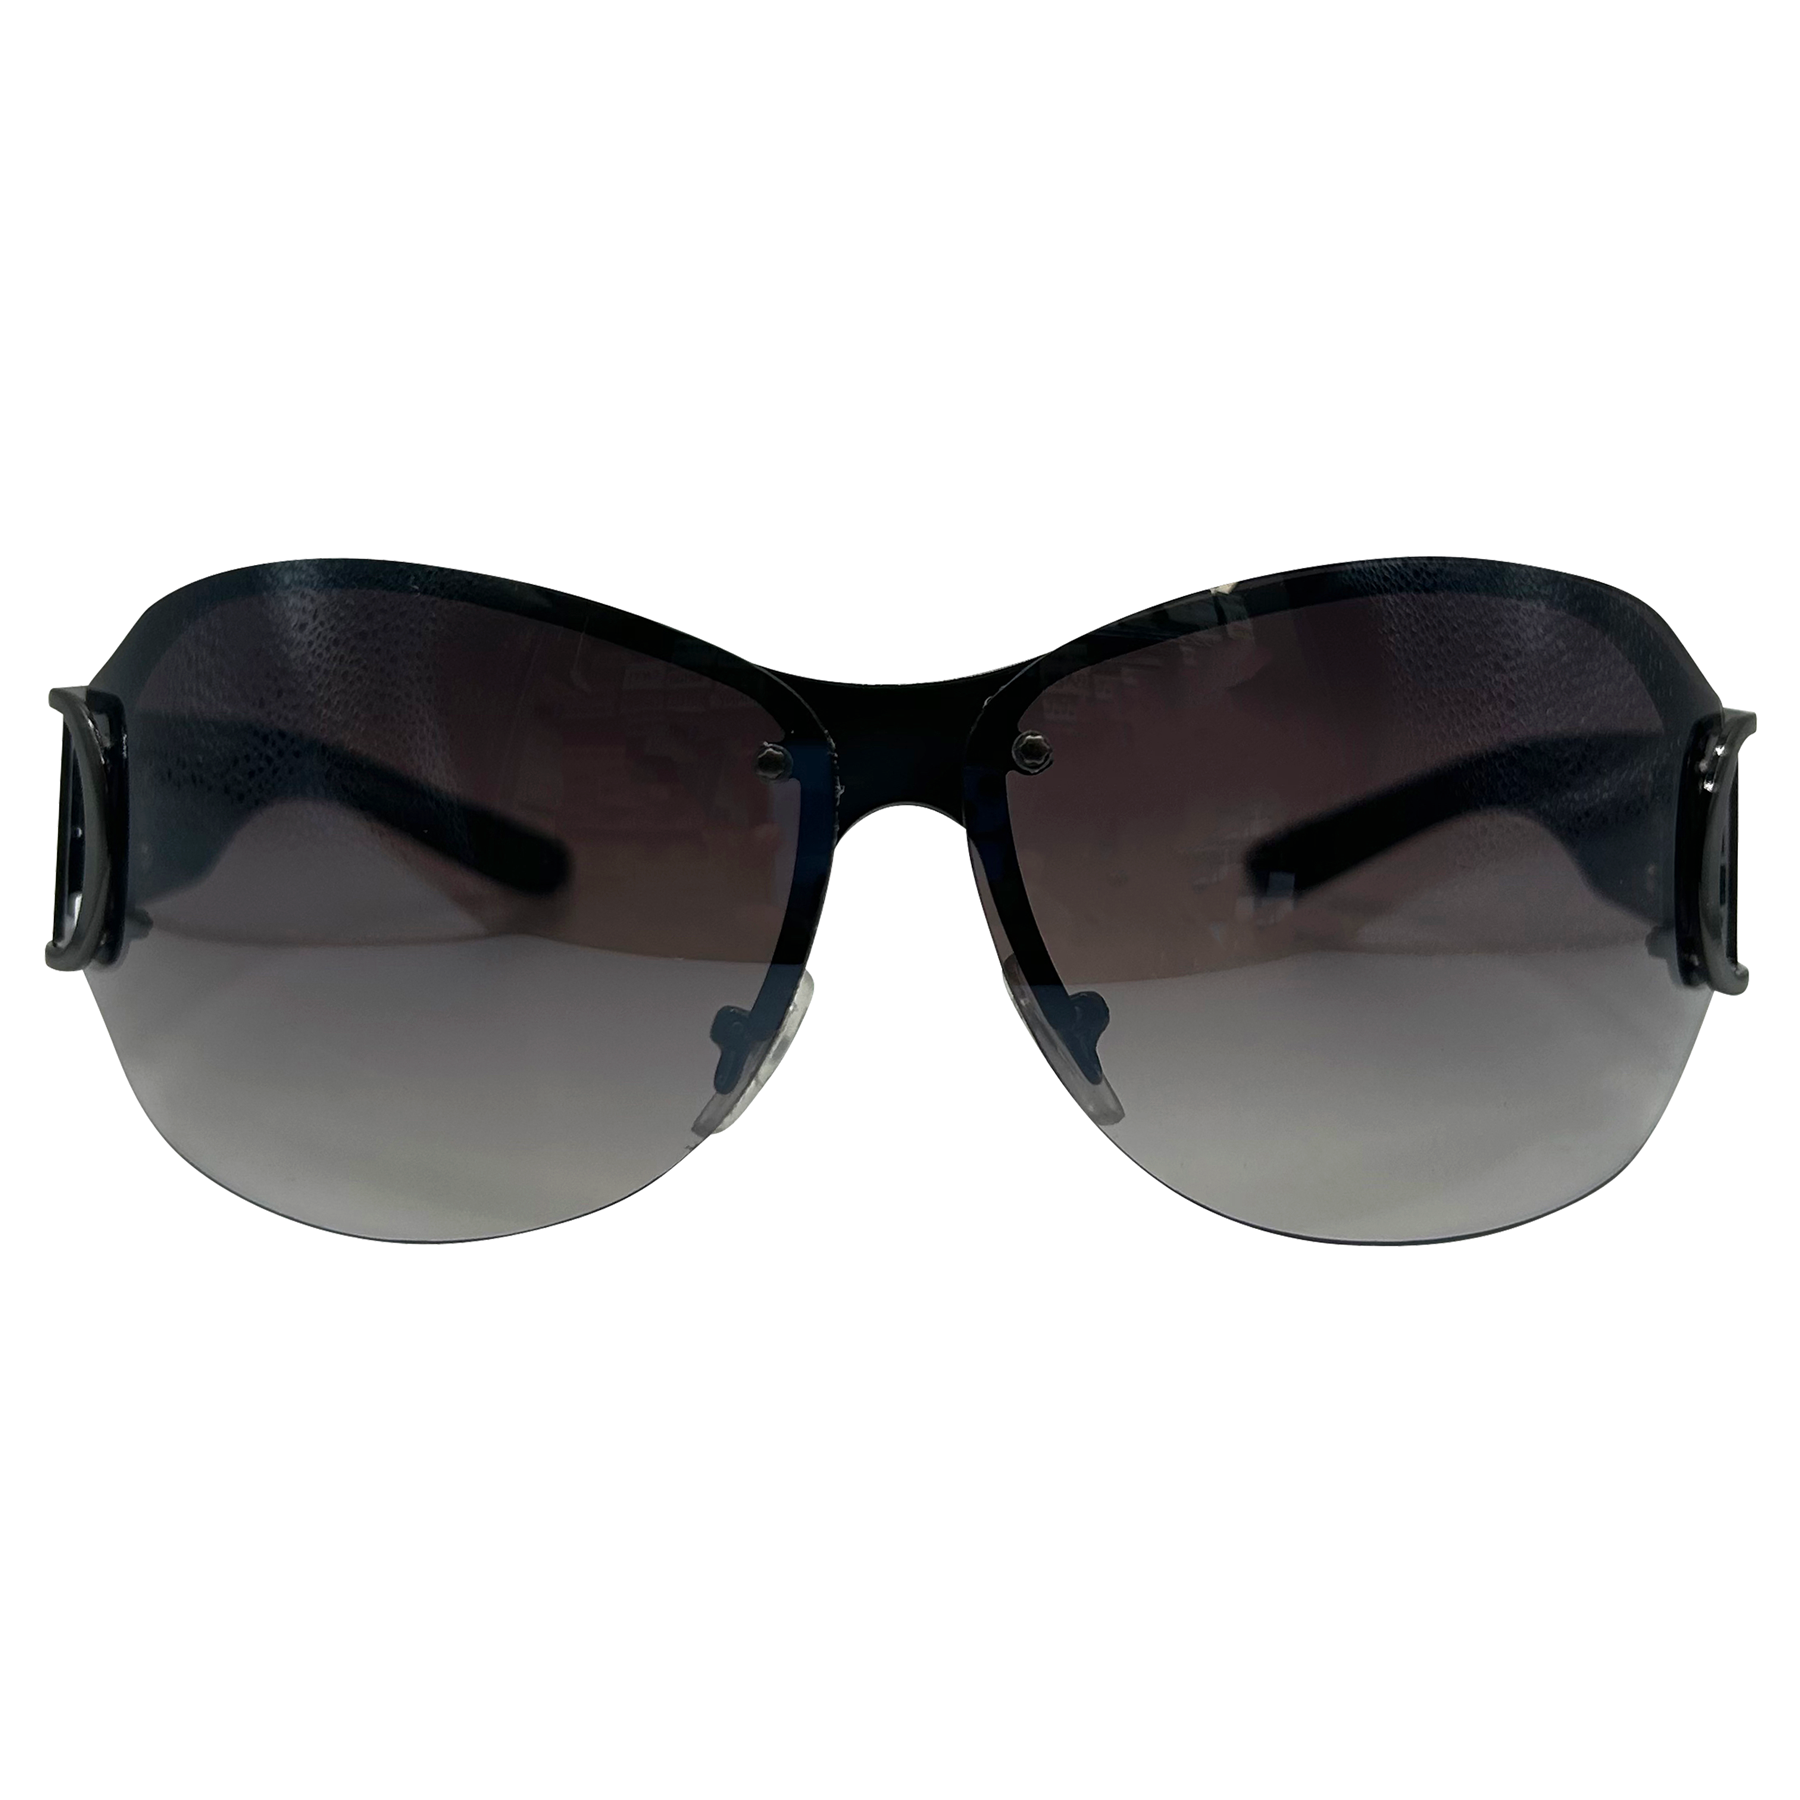 SMALLZ Shield Sunglasses